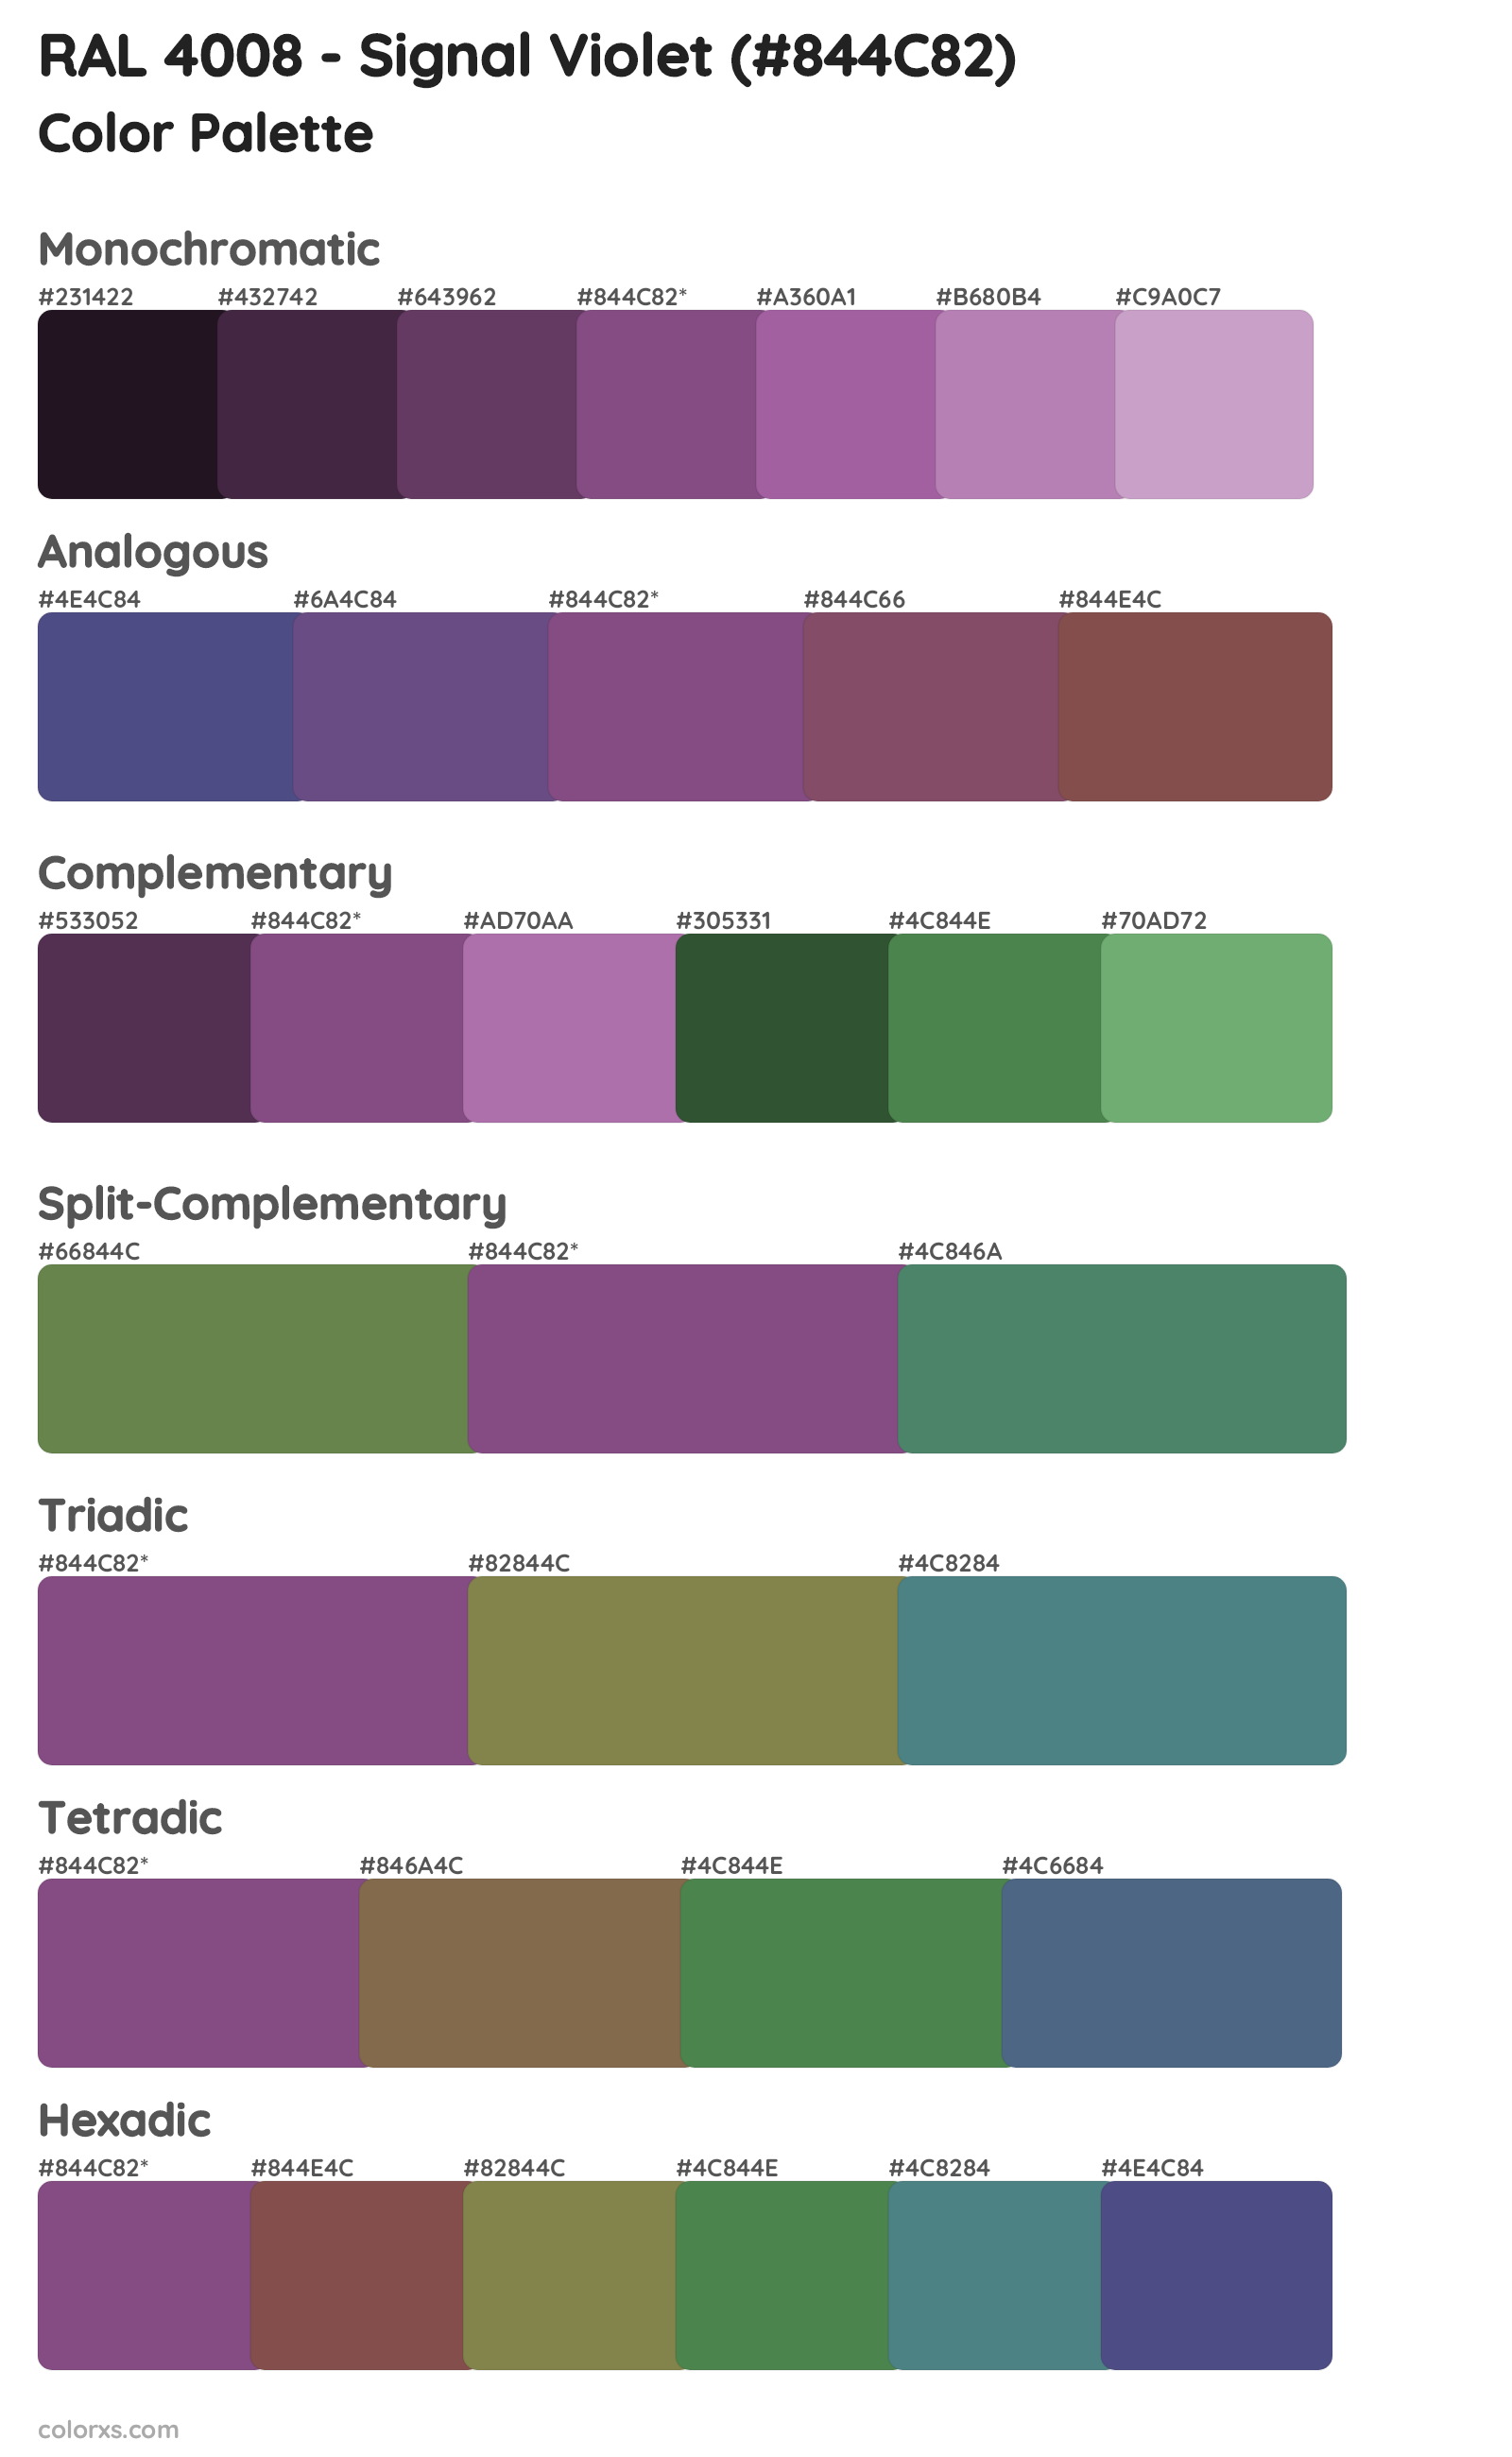 RAL 4008 - Signal Violet Color Scheme Palettes